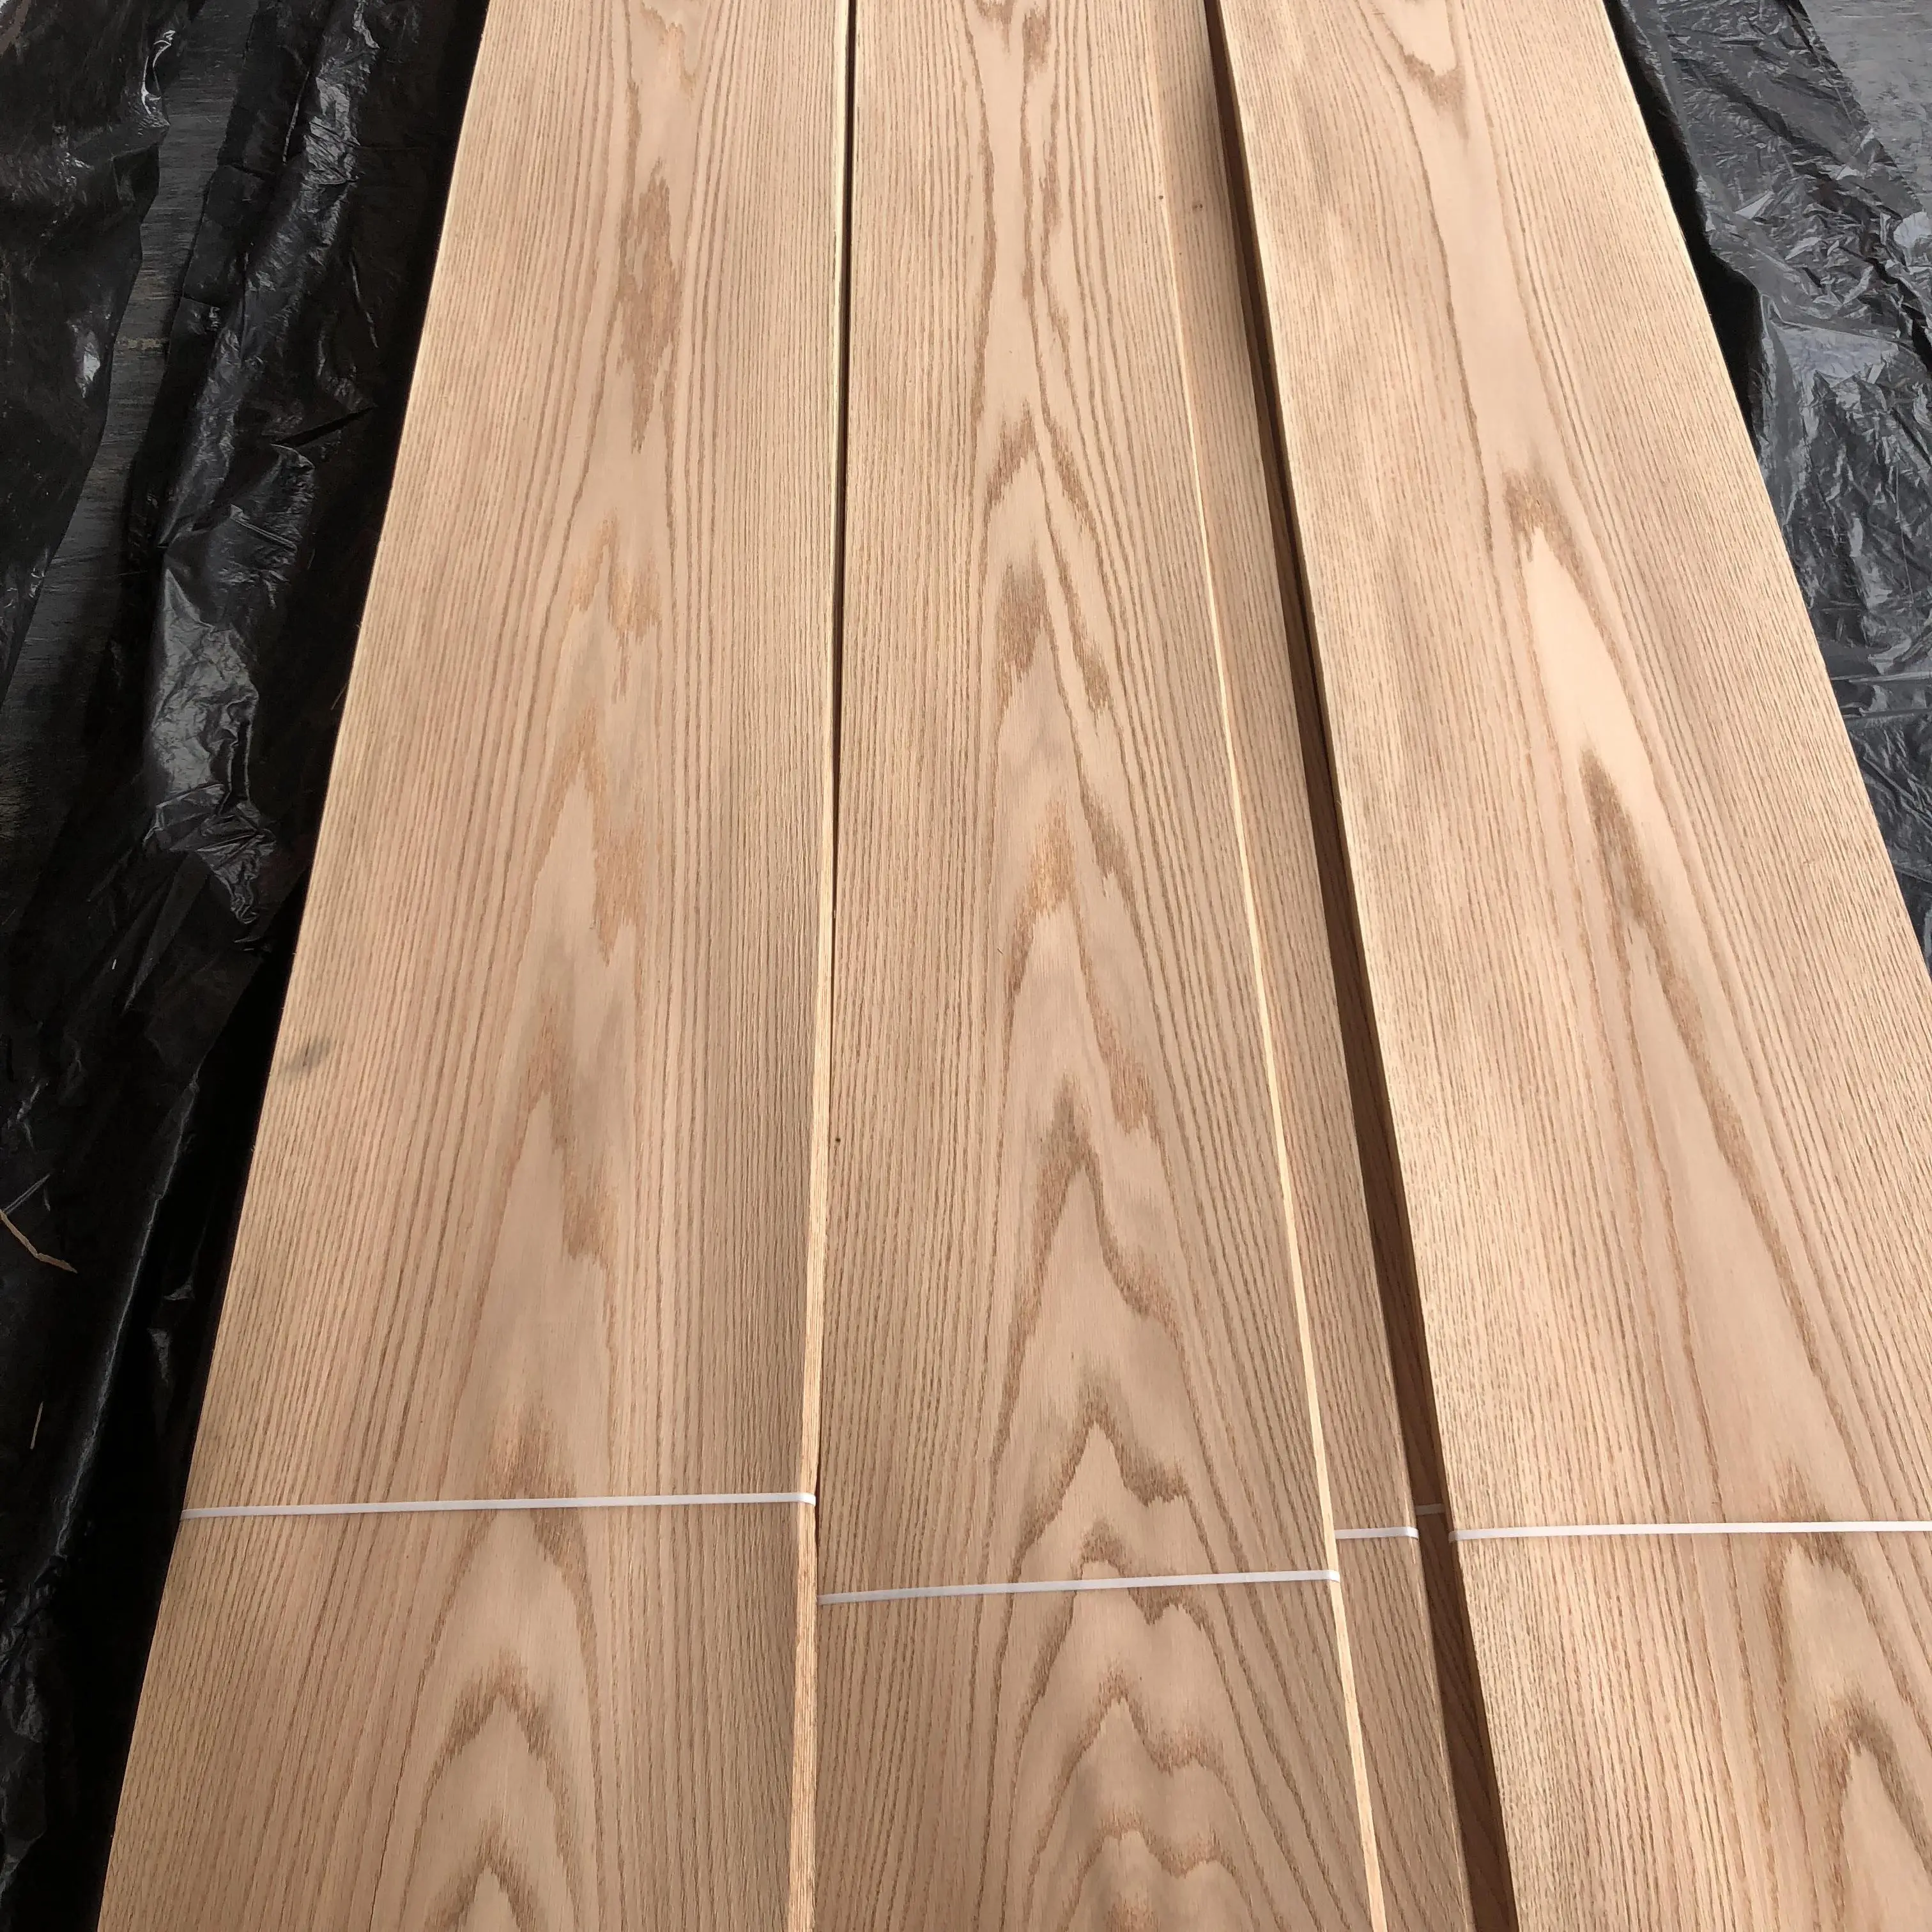 Wholesale Price Oak Veneers Red Oak Wood Veneer 0.5mm Wood Veneer Wall Panels for Flooring Furniture